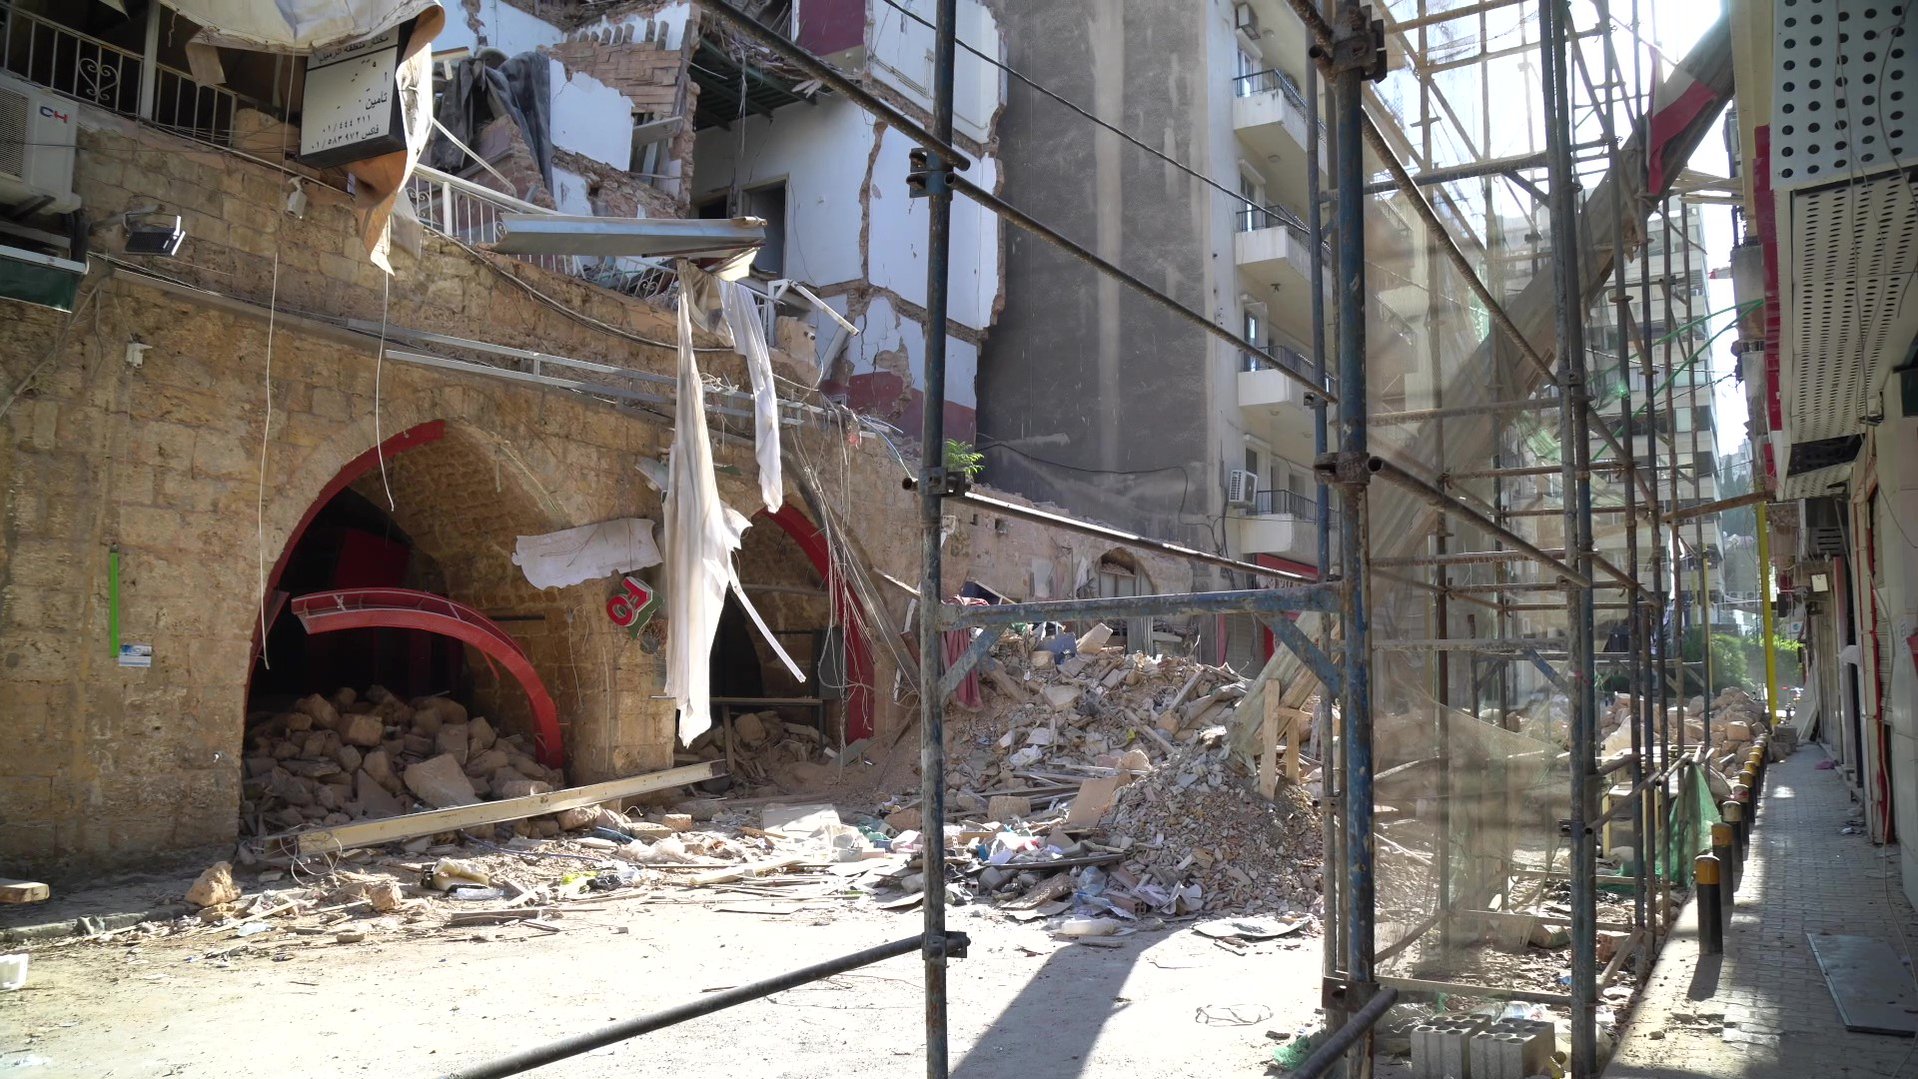 De explosie verwoeste de wijk Karantina in Beiroet en liet mensen getraumatiseerd achter War Child